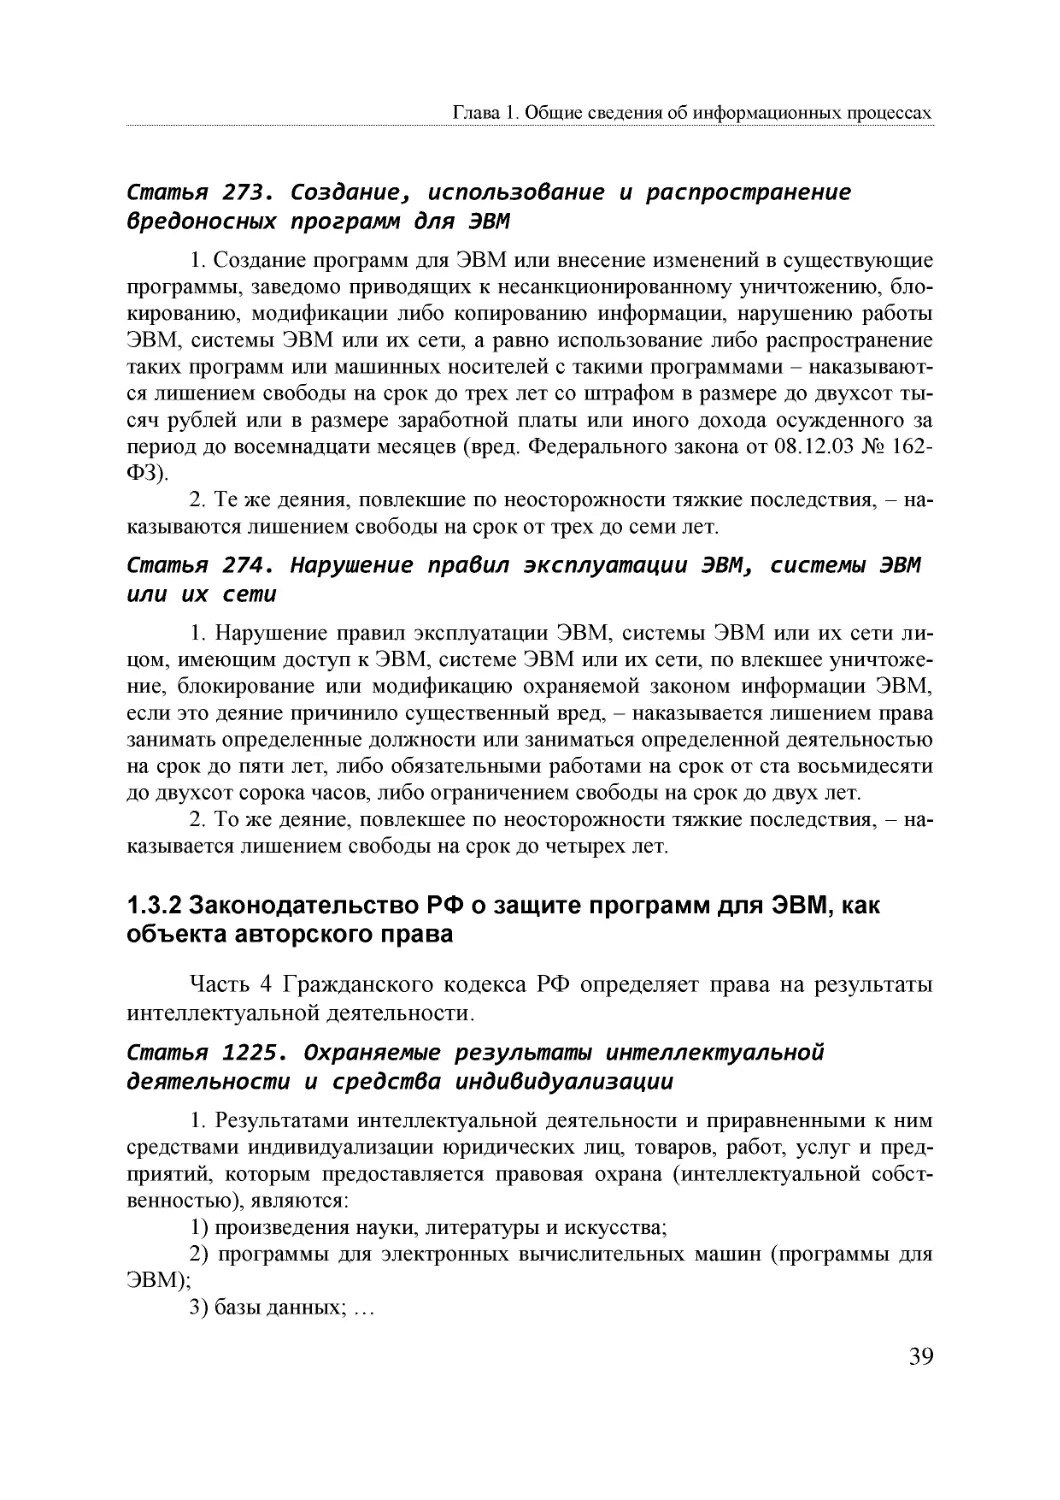 Informatika_Uchebnik_dlya_vuzov_2010 39